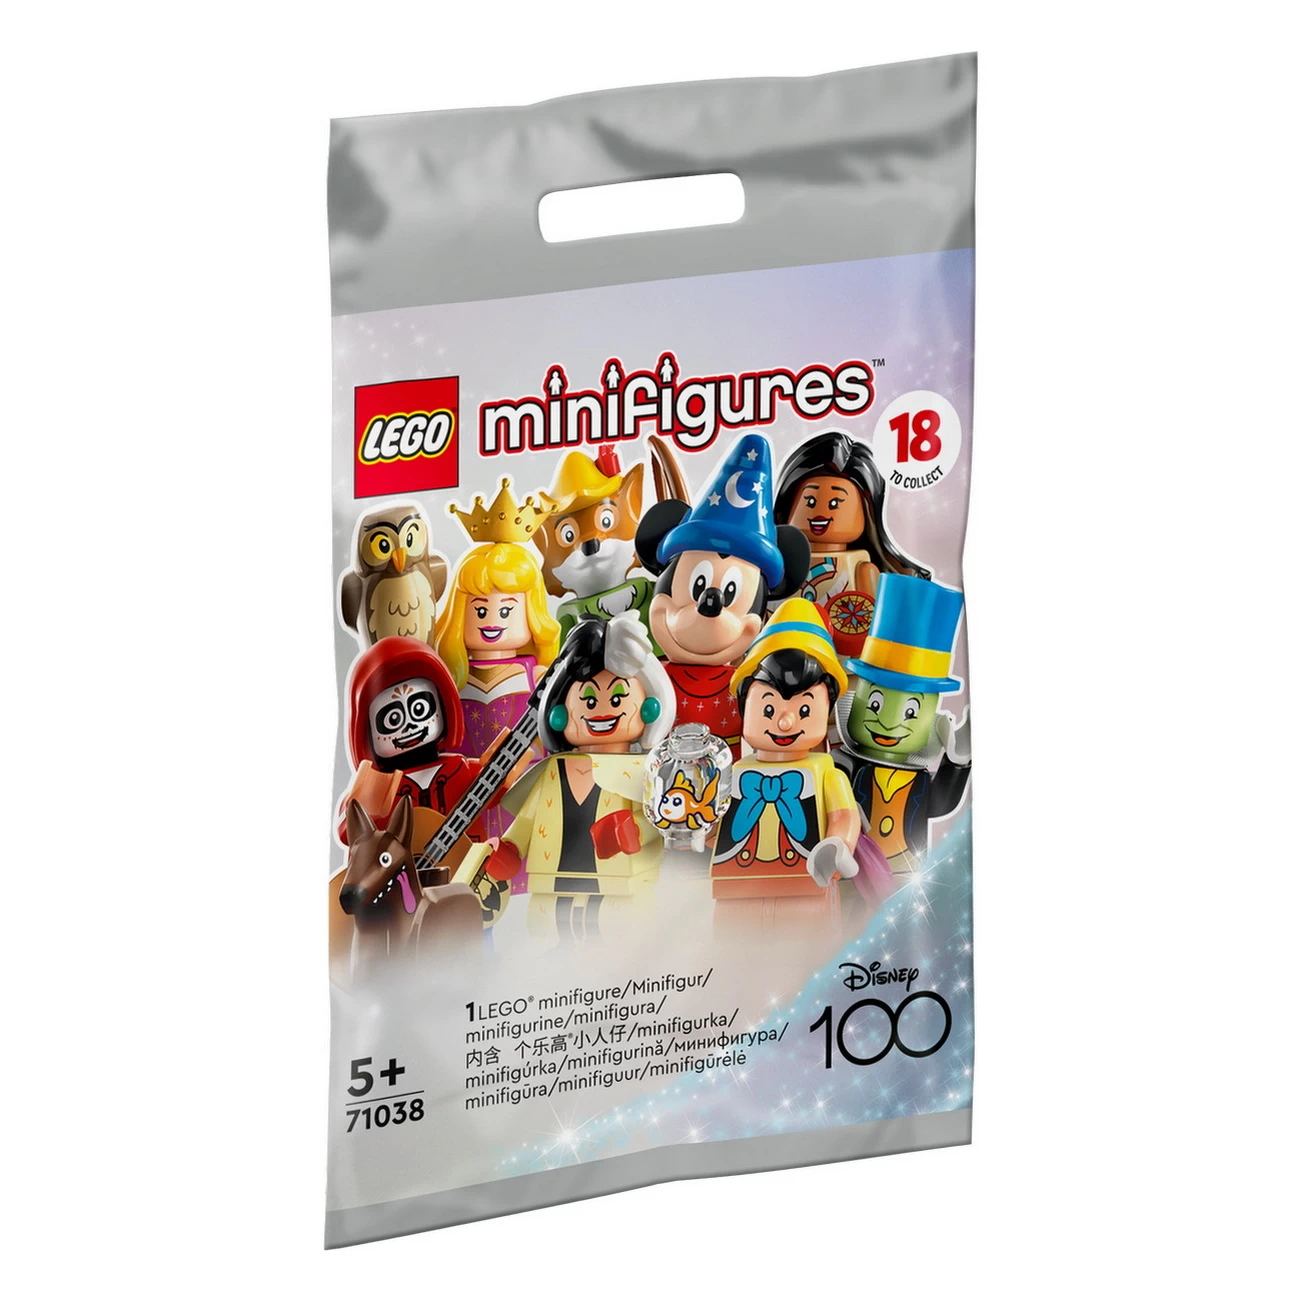 LEGO Minifiguren Disney 100 (71038)